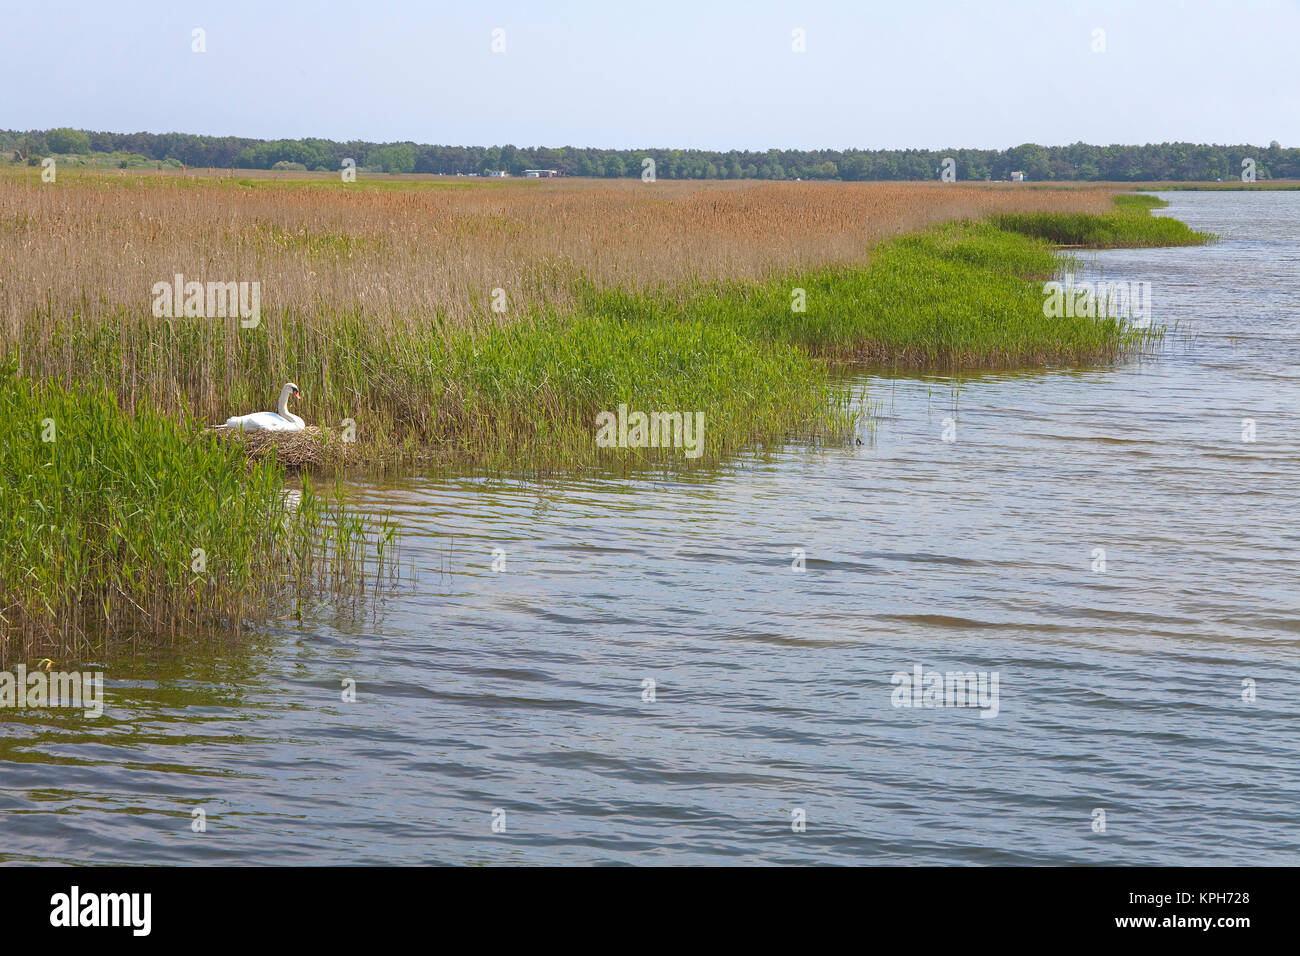 Swan à la reproduction de Buchelsdorf brut Bodden, peninsula Moenchgut Ruegen island, de Mecklembourg-Poméranie occidentale, de la mer Baltique, l'Allemagne, de l'Europe Banque D'Images